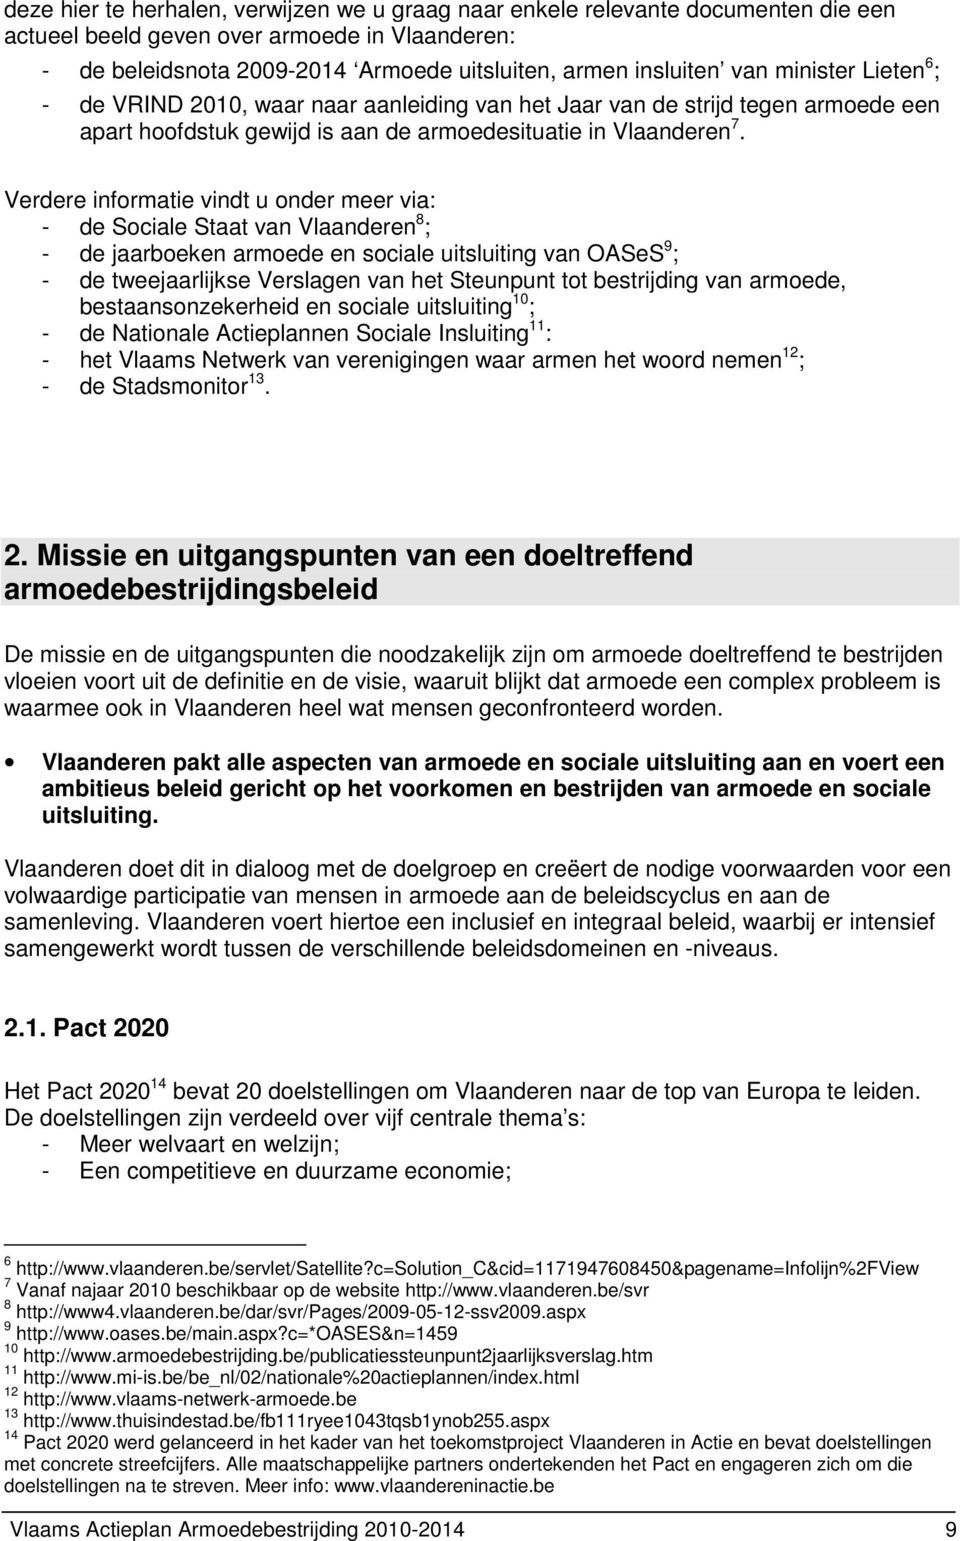 Verdere informatie vindt u onder meer via: - de Sociale Staat van Vlaanderen 8 ; - de jaarboeken armoede en sociale uitsluiting van OASeS 9 ; - de tweejaarlijkse Verslagen van het Steunpunt tot